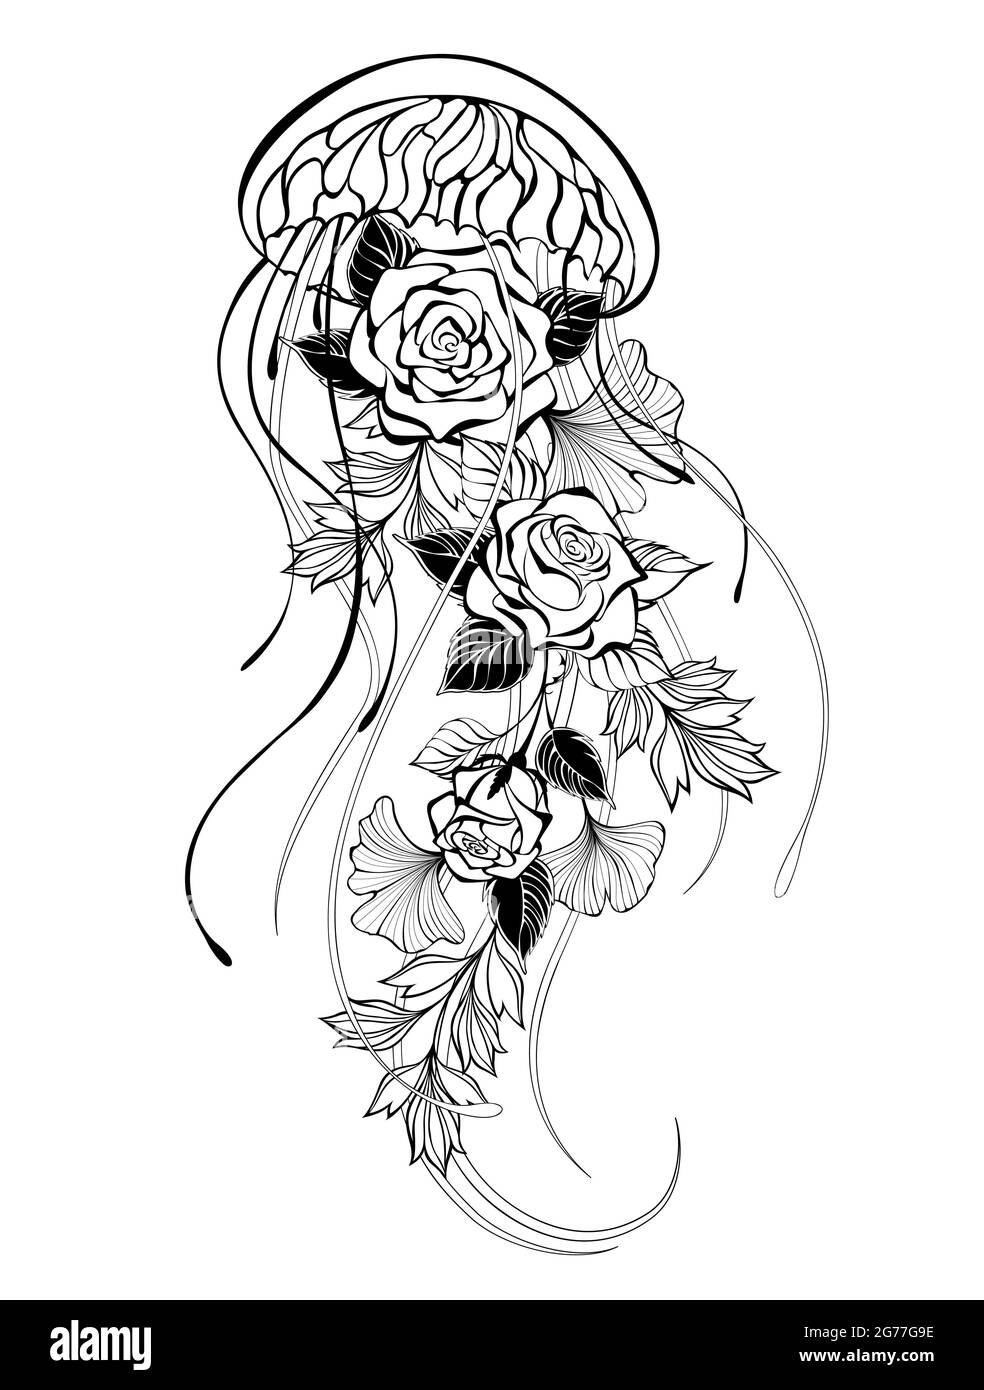 Contorno, artísticamente dibujado medusas con rosas y plantas decorativas sobre fondo blanco. Ilustración del Vector